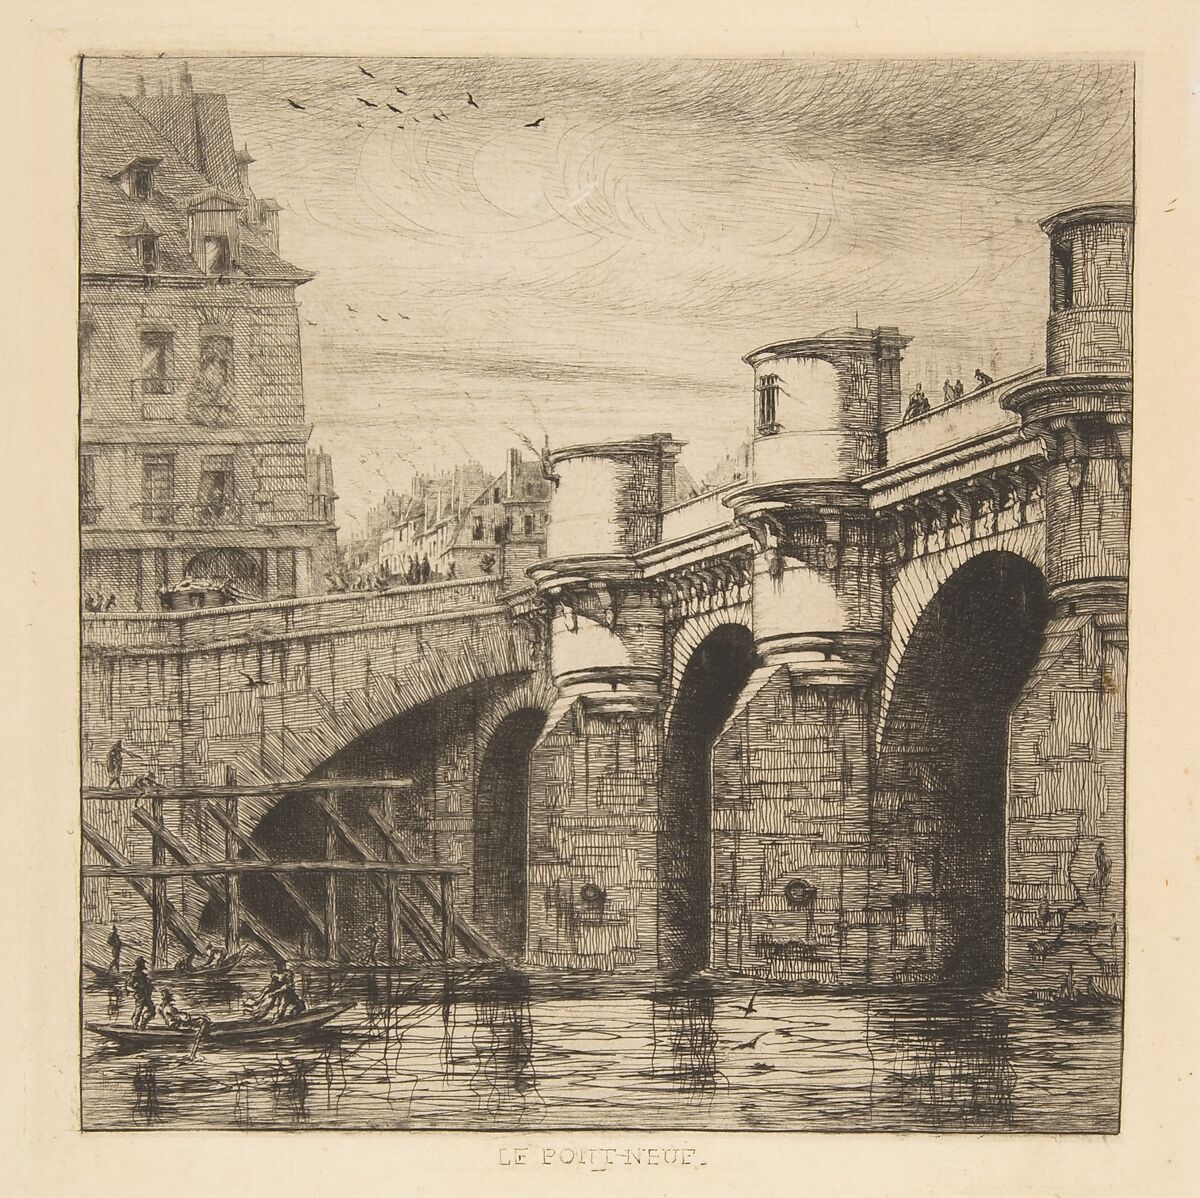 Charles Meryon, Pont-Neuf, Paris